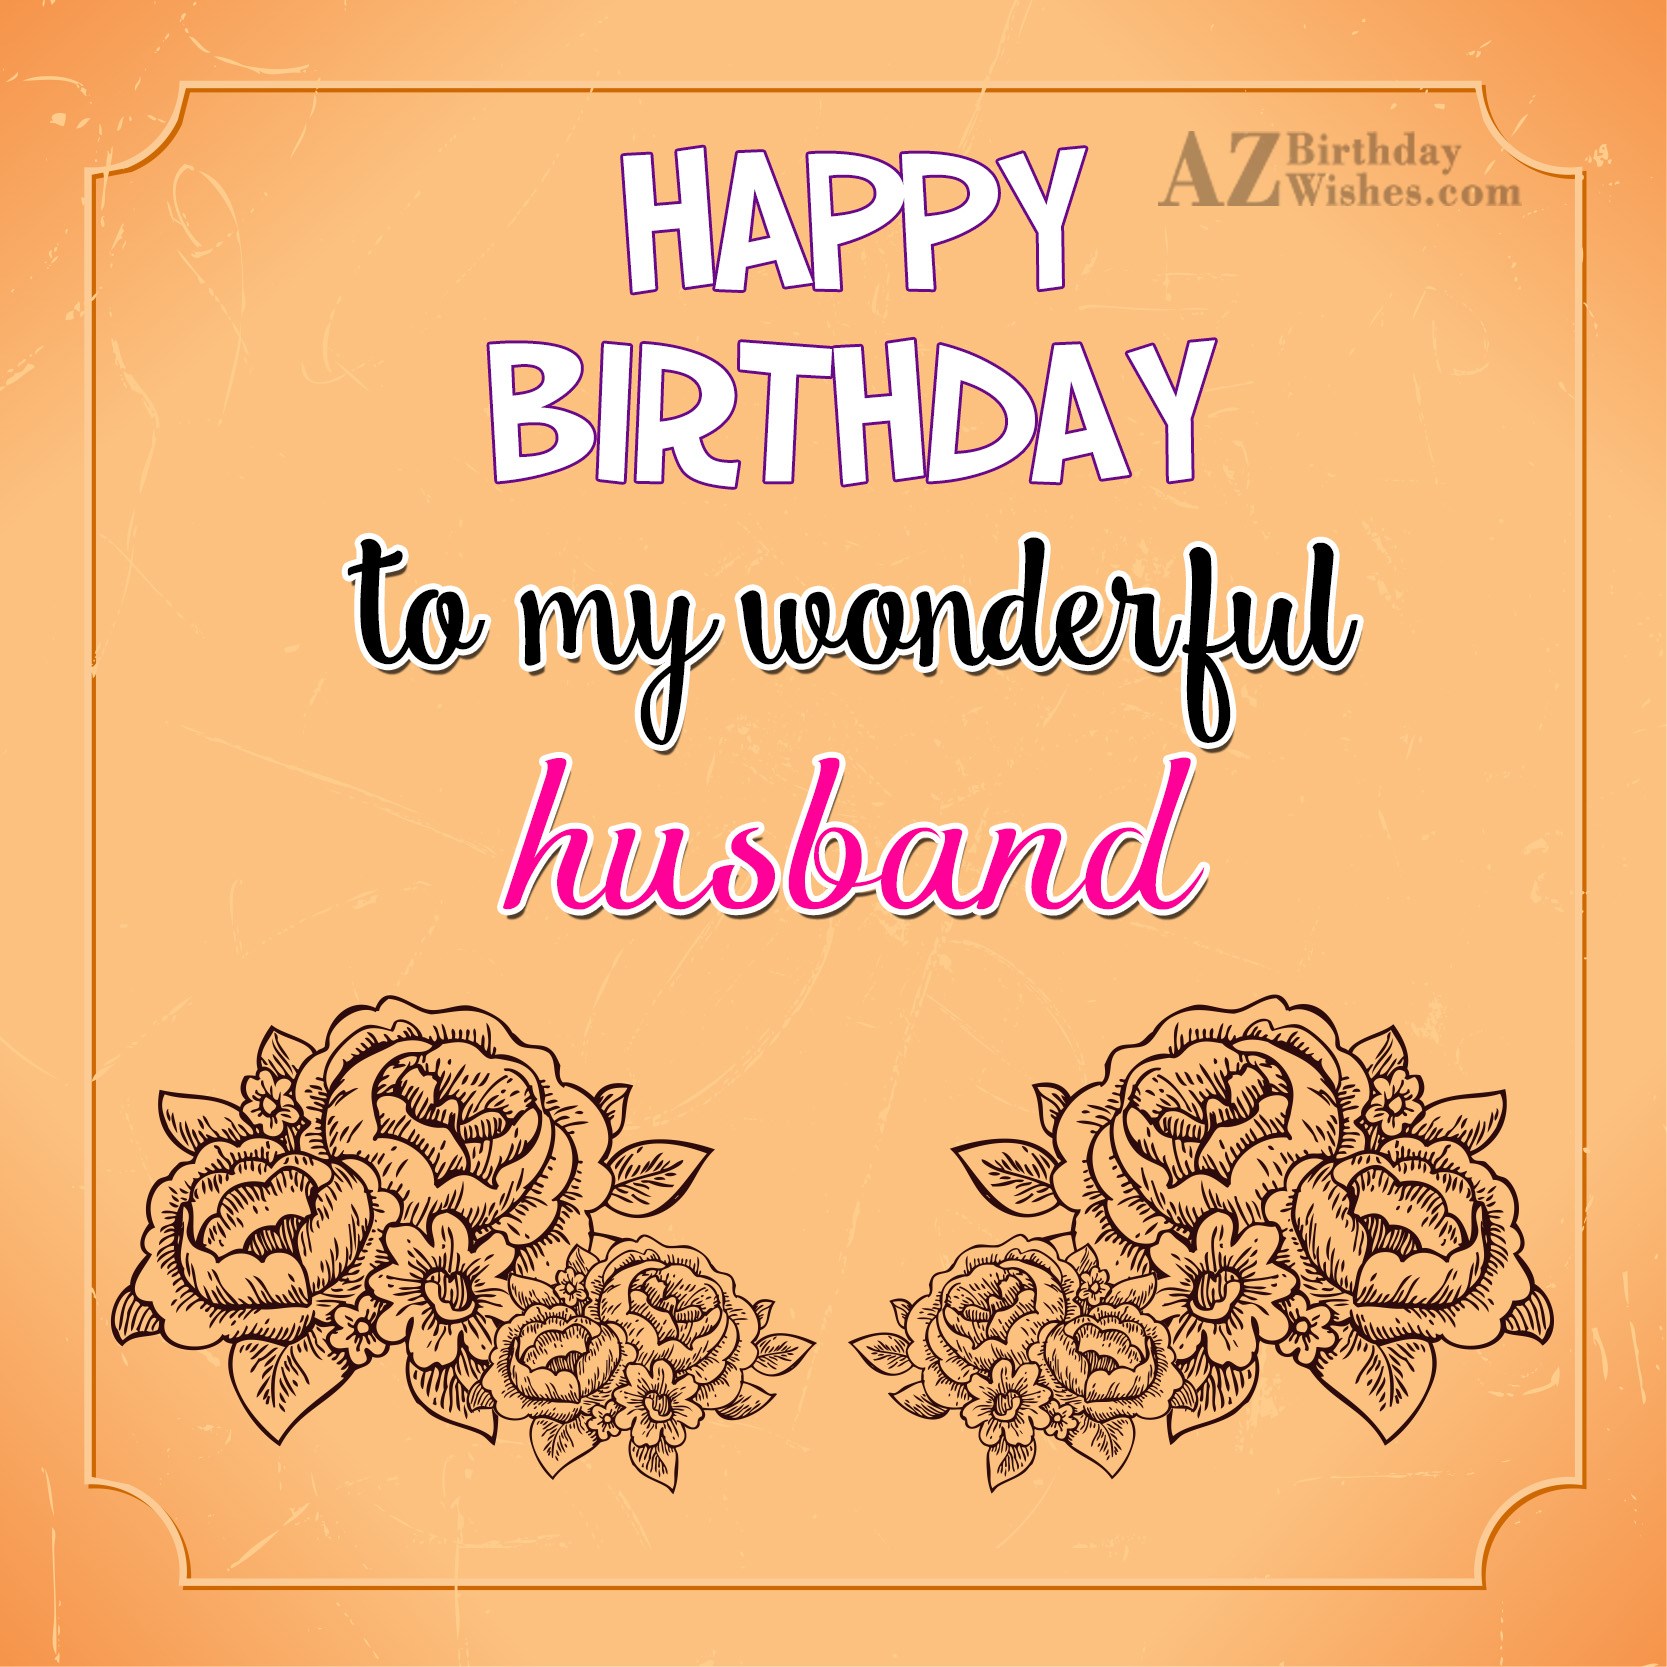 Happy birthday to my wonderful husband - AZBirthdayWishes.com